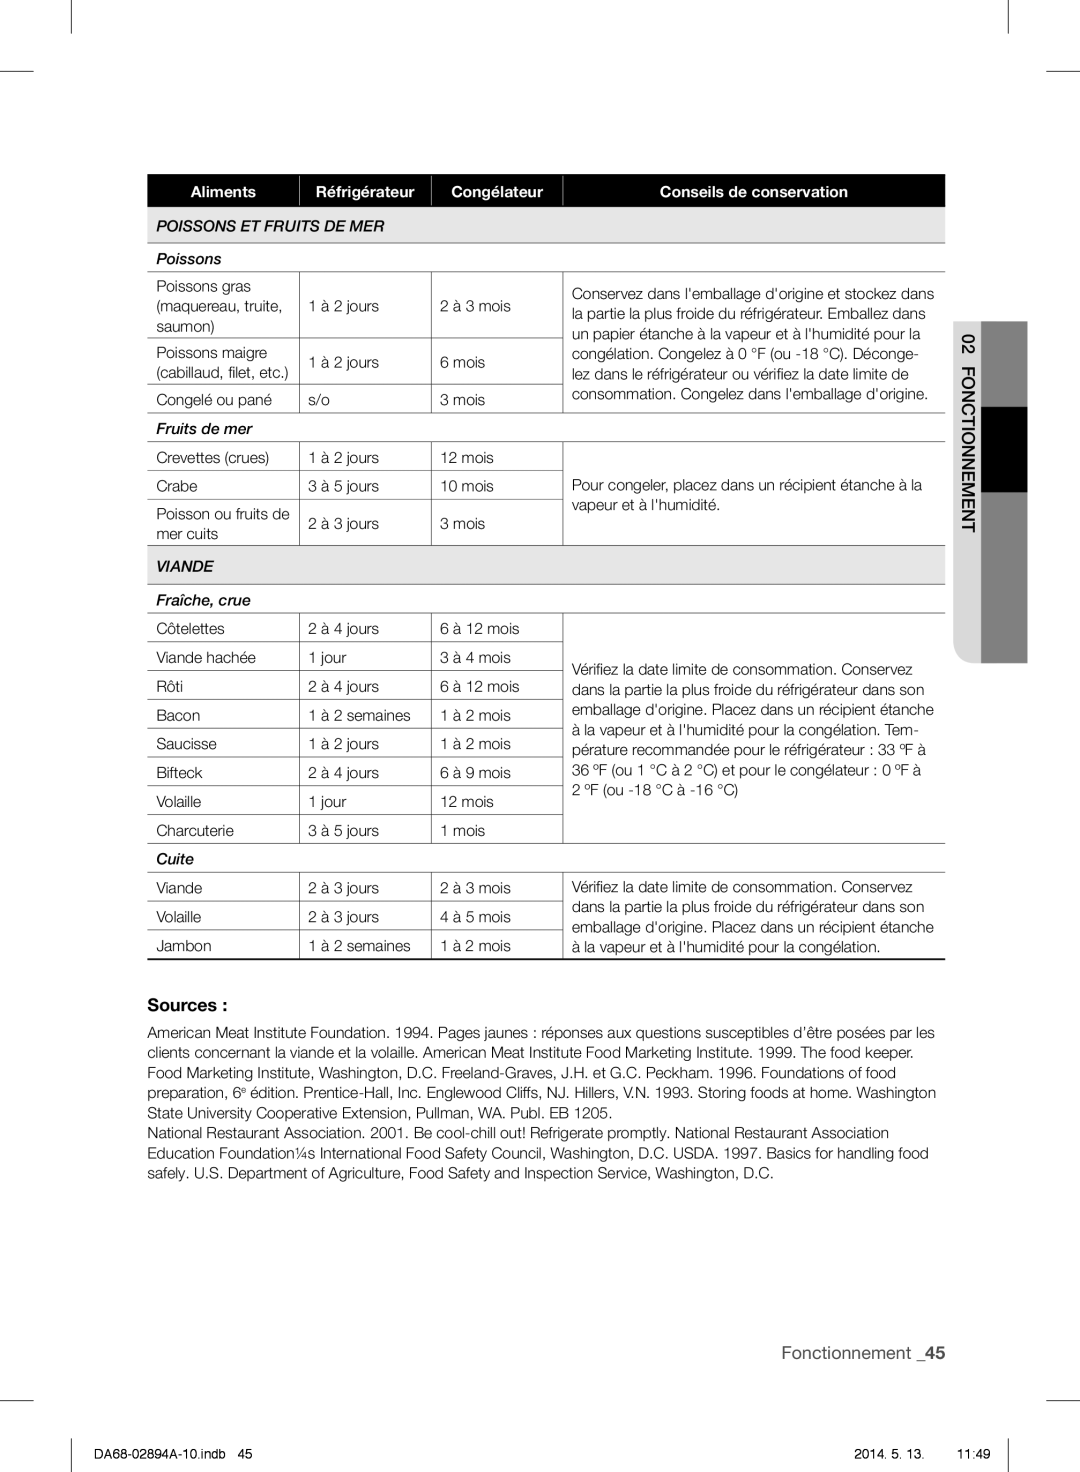 Samsung RF31FMESBSR user manual Fonctionnement, Aliments, Réfrigérateur, Congélateur, Conseils de conservation 